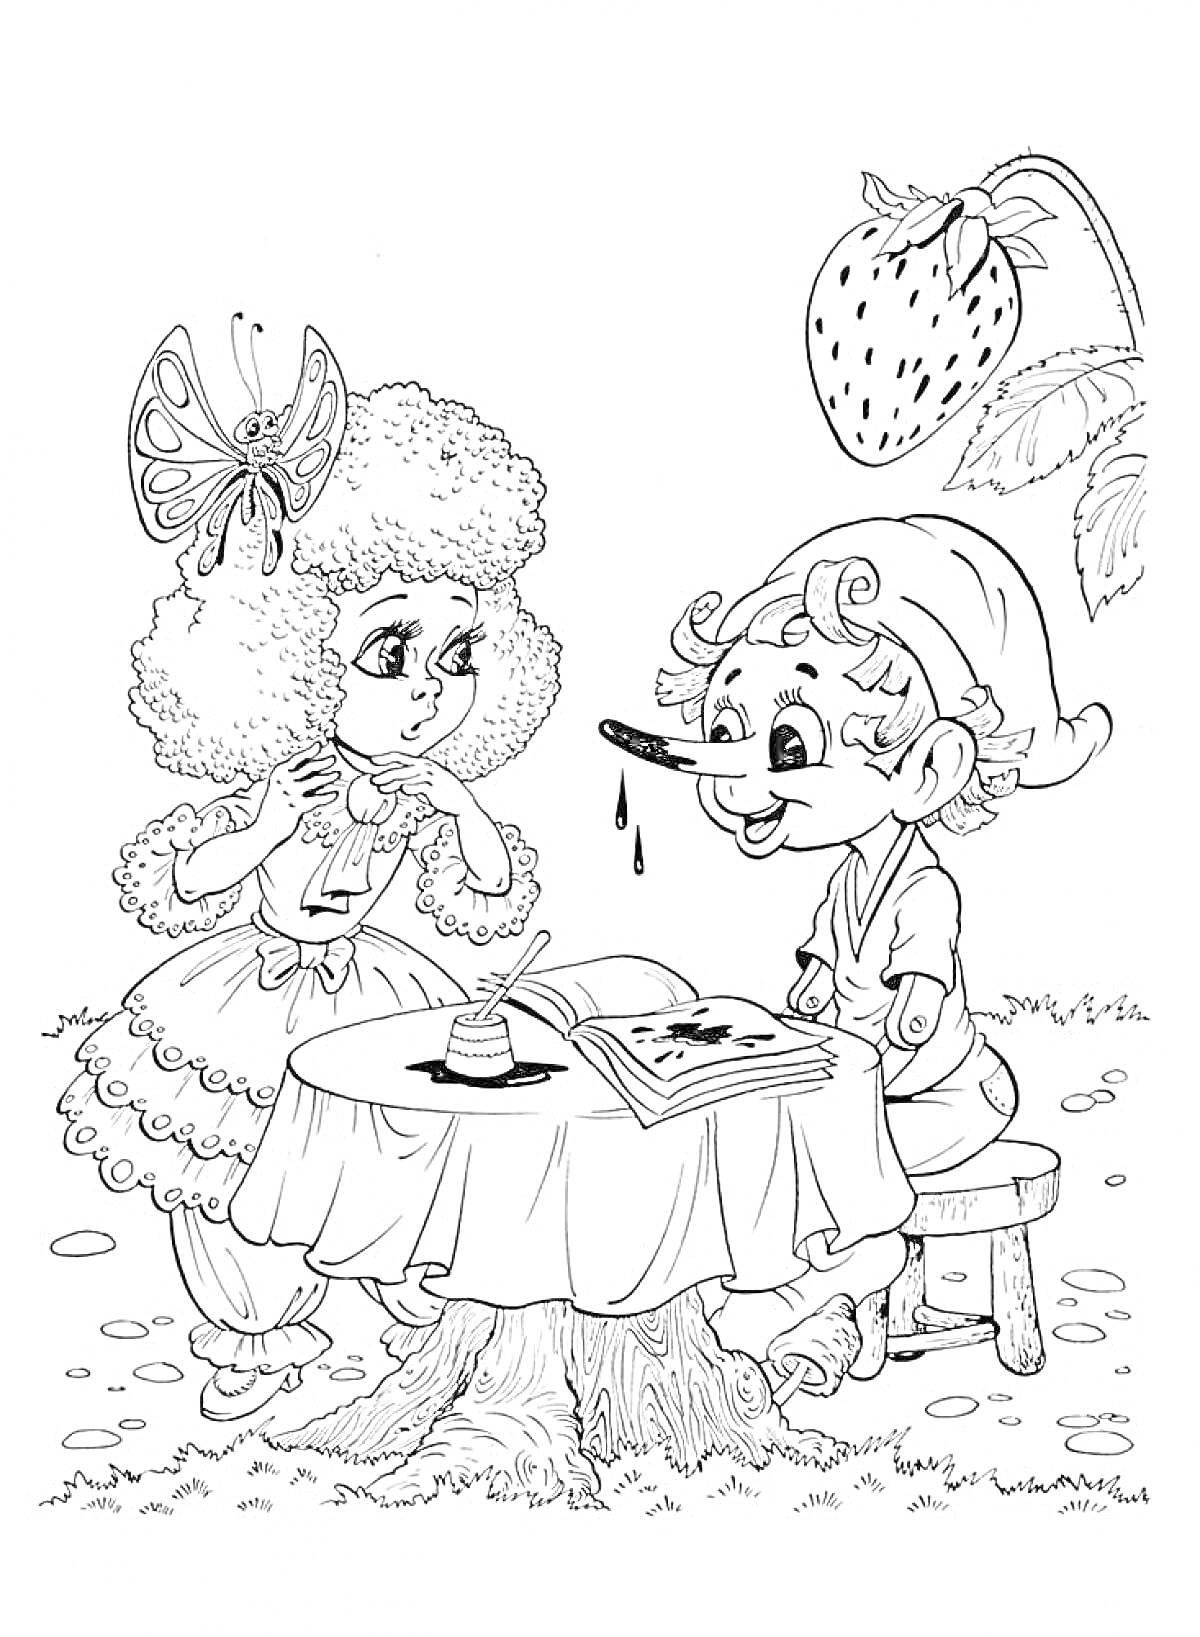 Раскраска Буратино и девочка с бабочкой на голове за столом с чернильницей под большой клубникой